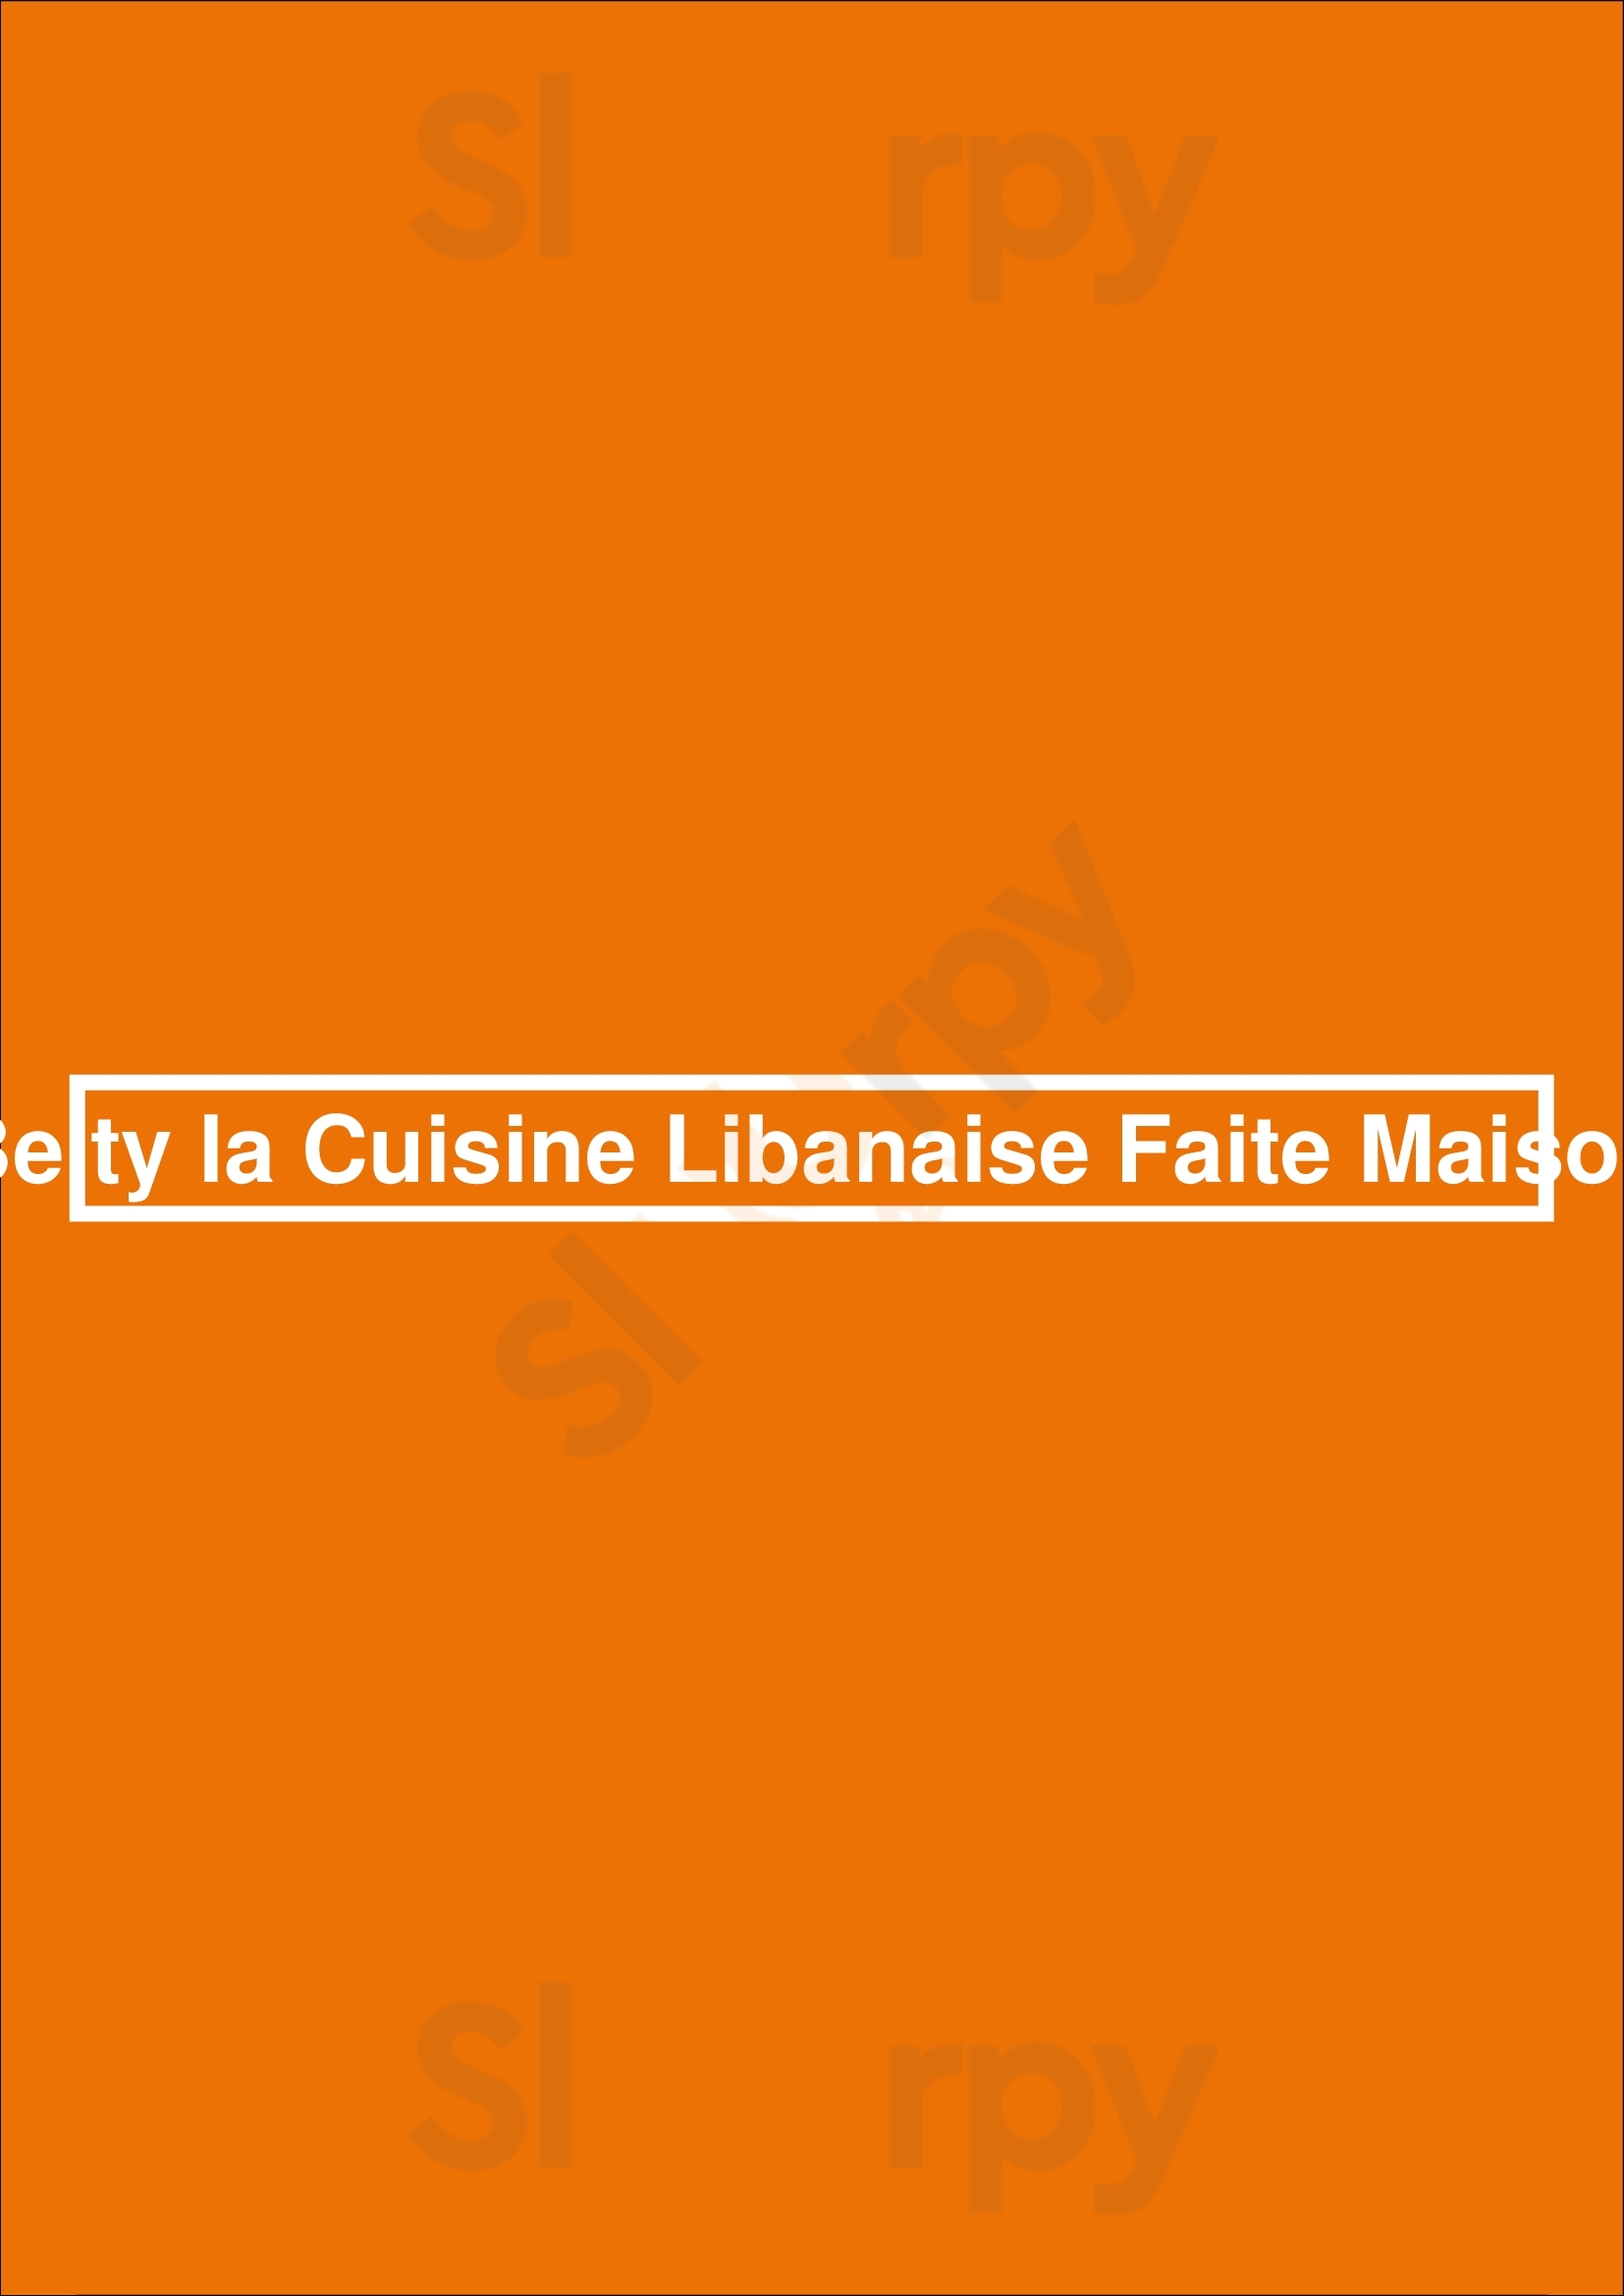 Beity La Cuisine Libanaise Faite Maison Levallois-Perret Menu - 1